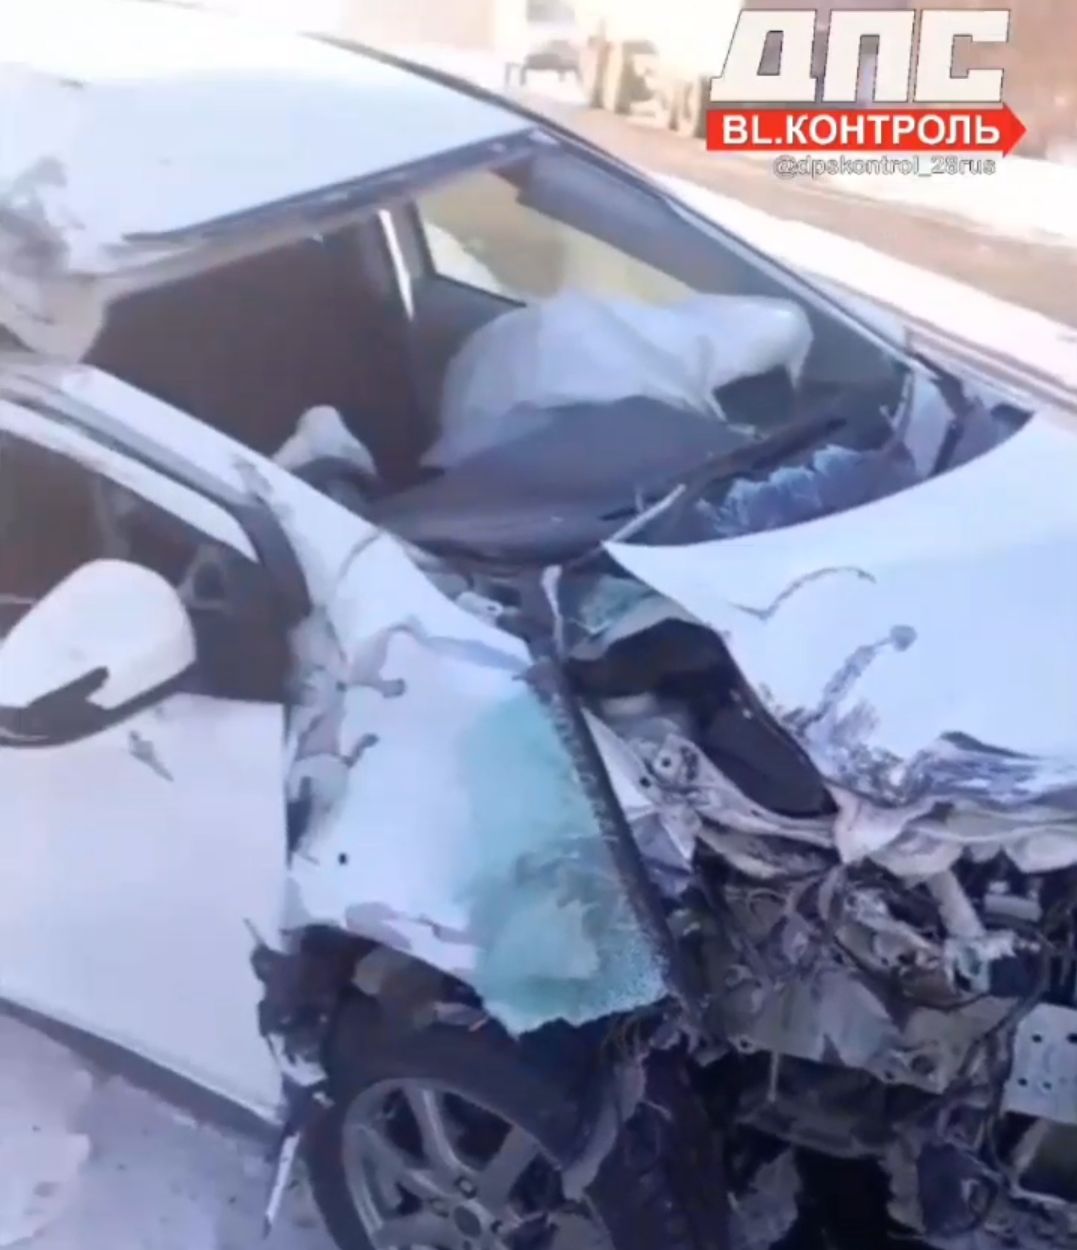 "В лохматину": автомобиль жестко разбился в ДТП в Амурской области